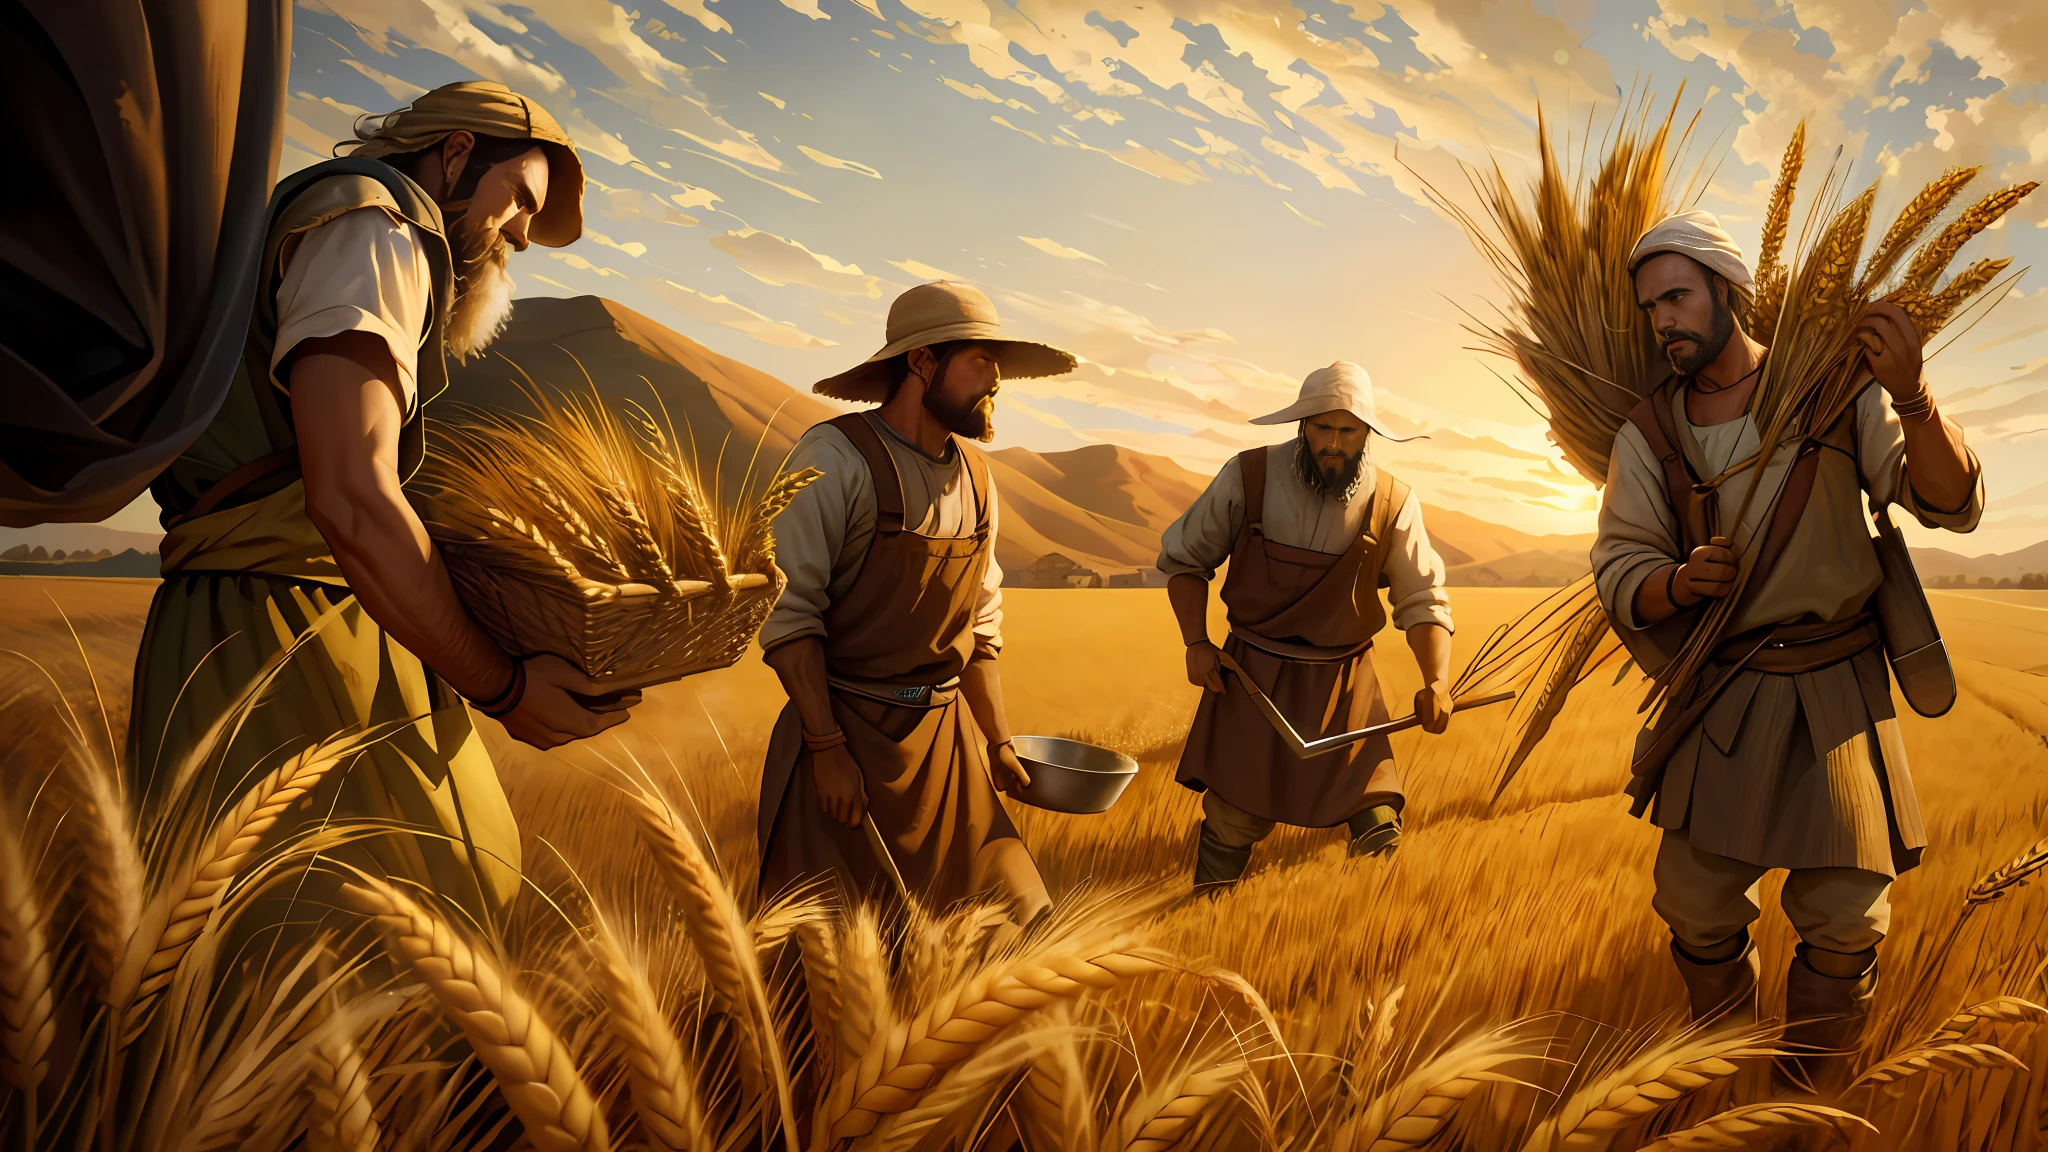 طلاء زيتي, هناك ثلاثة رجال يحصدون القمح في الحقل, زراعة القمح, التمثيل الكتابي الملحمي, 8K فائق الوضوح, الإضاءة السينمائية, جودة عالية, --s2